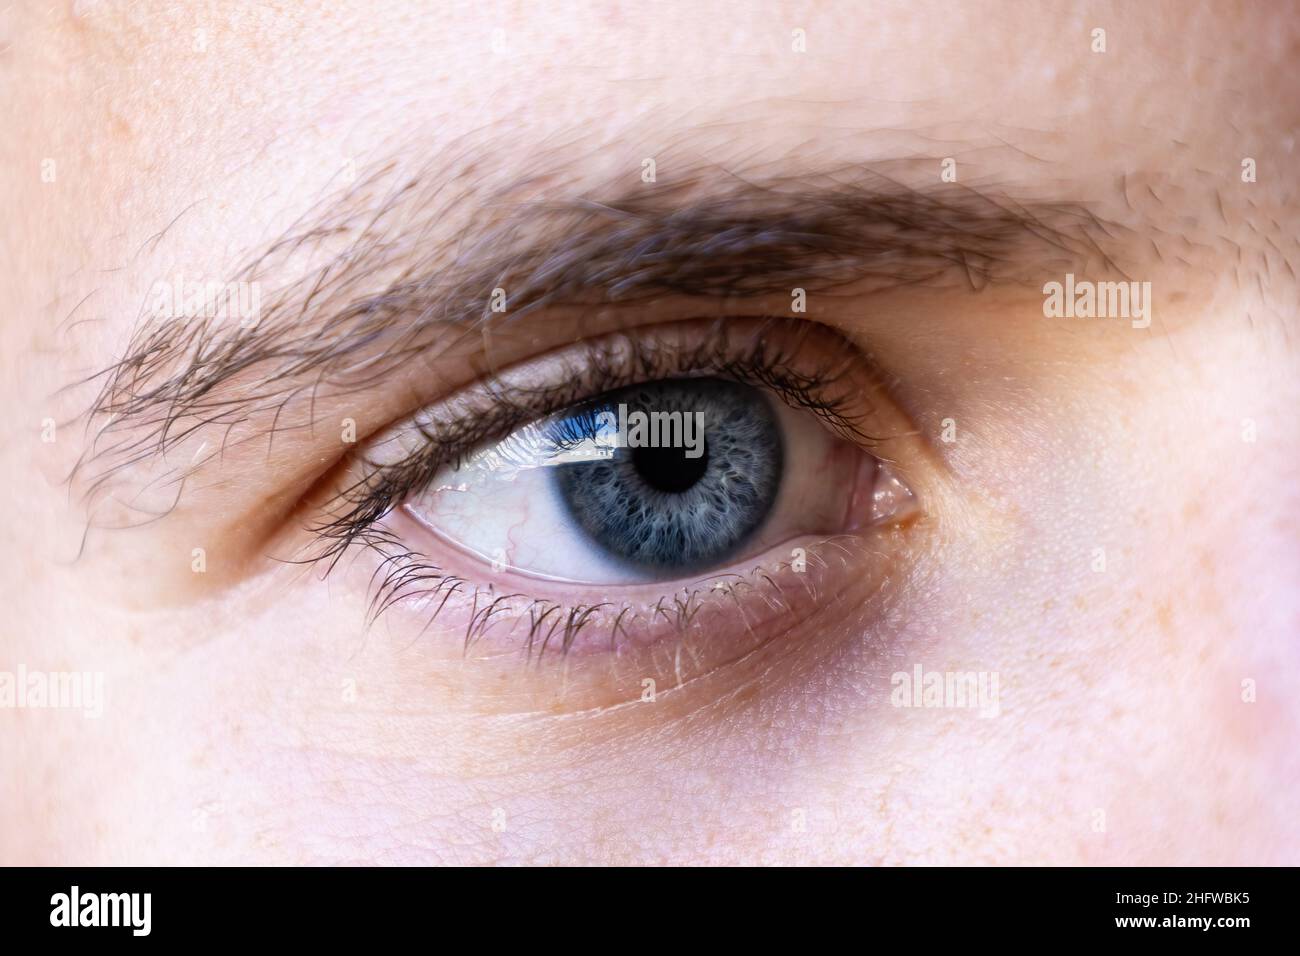 Macro photographie de la pupille d'un œil de jeune homme Banque D'Images